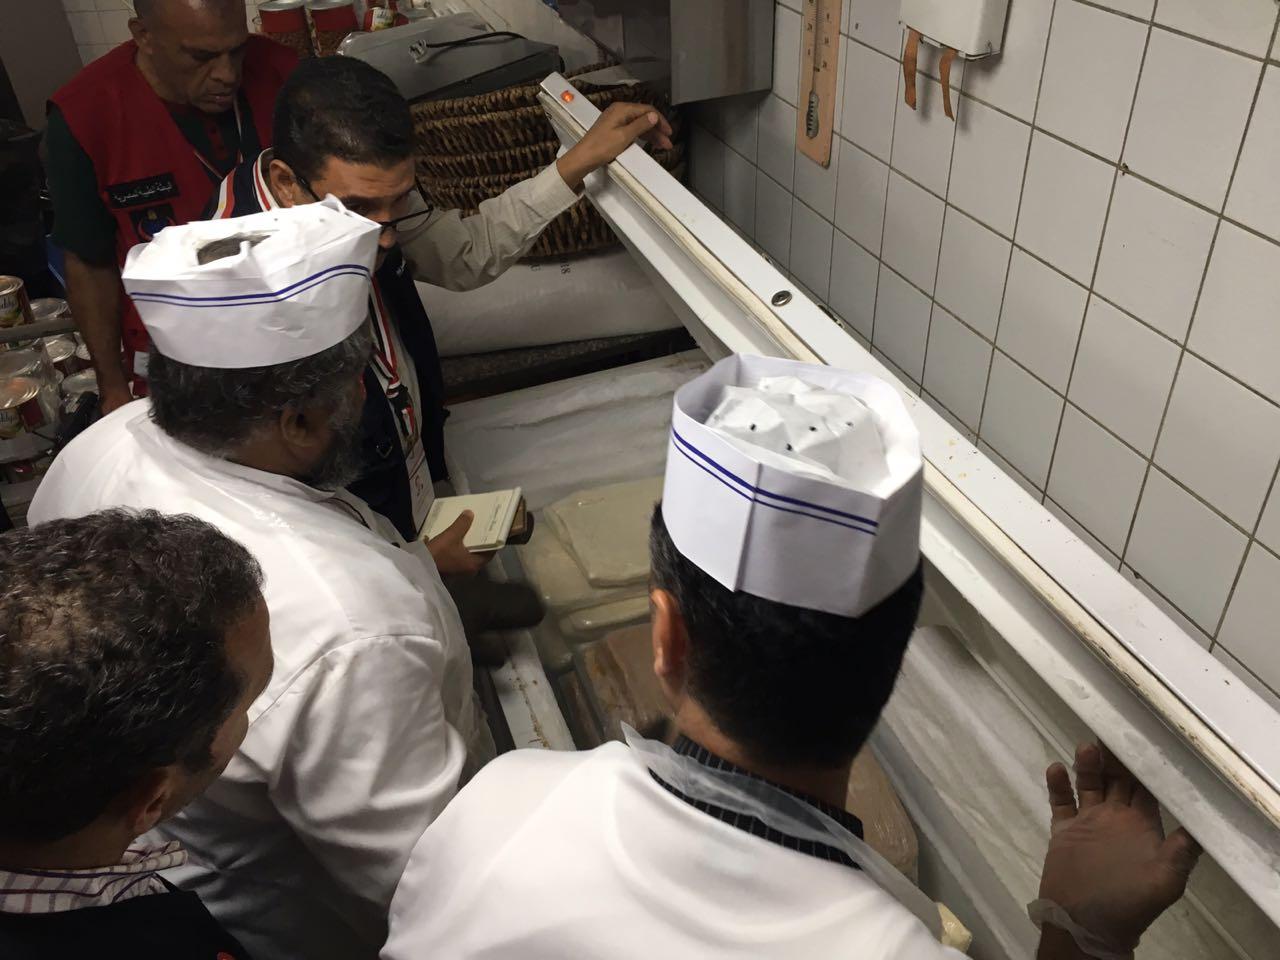   إصابة ١١٨ حاجاً مصريًا بنزلات معوية وإغلاق مطبخ أحد فنادق مكة